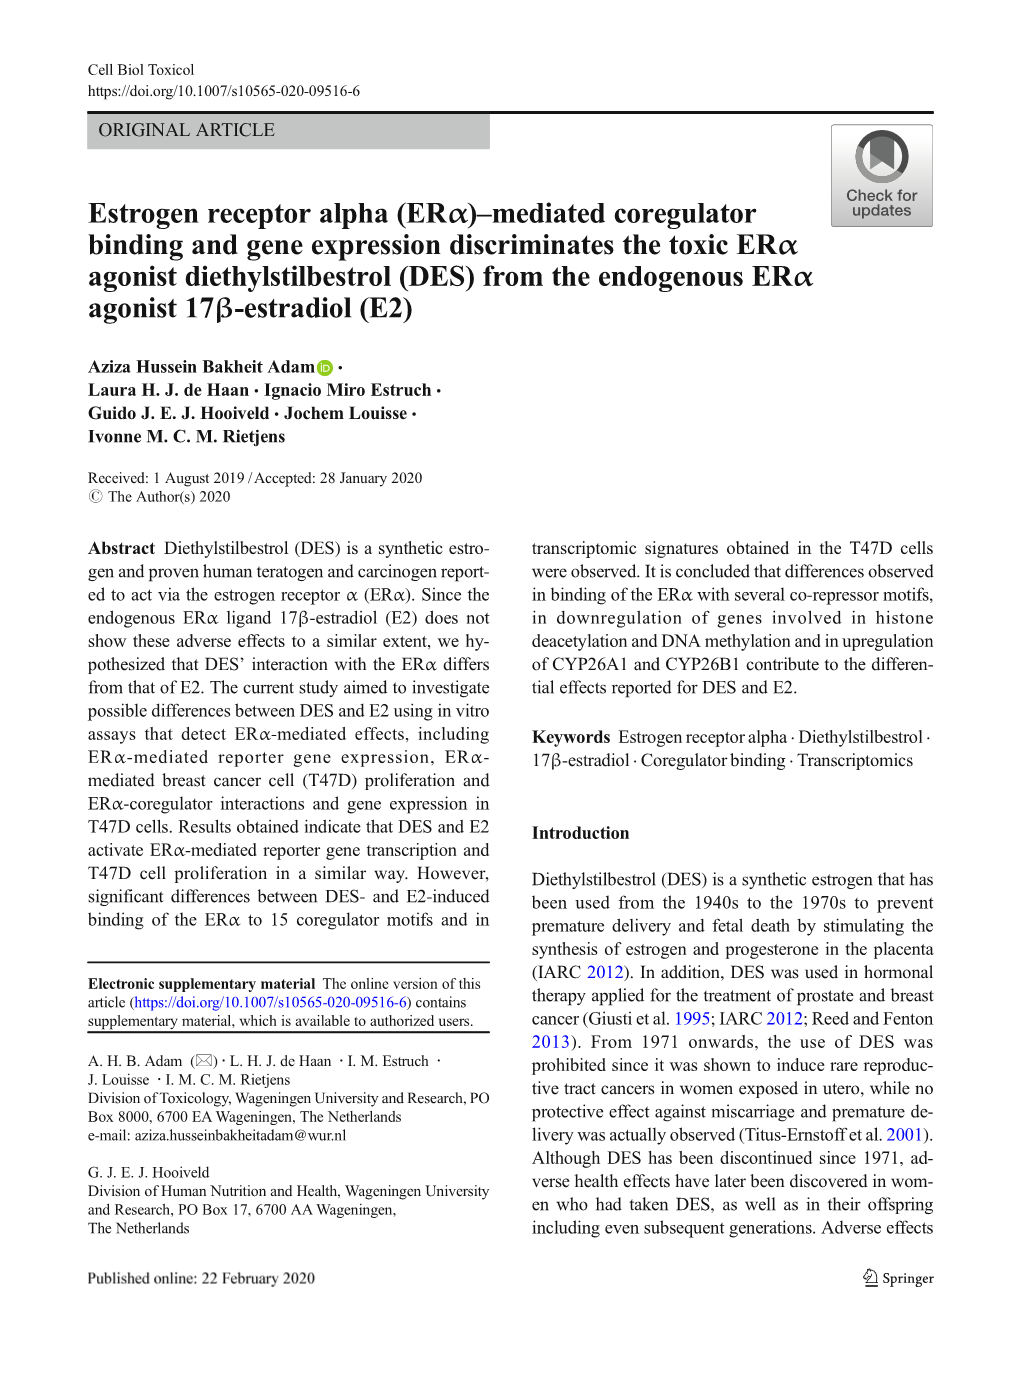 Estrogen Receptor Alpha (Erα)–Mediated Coregulator Binding And